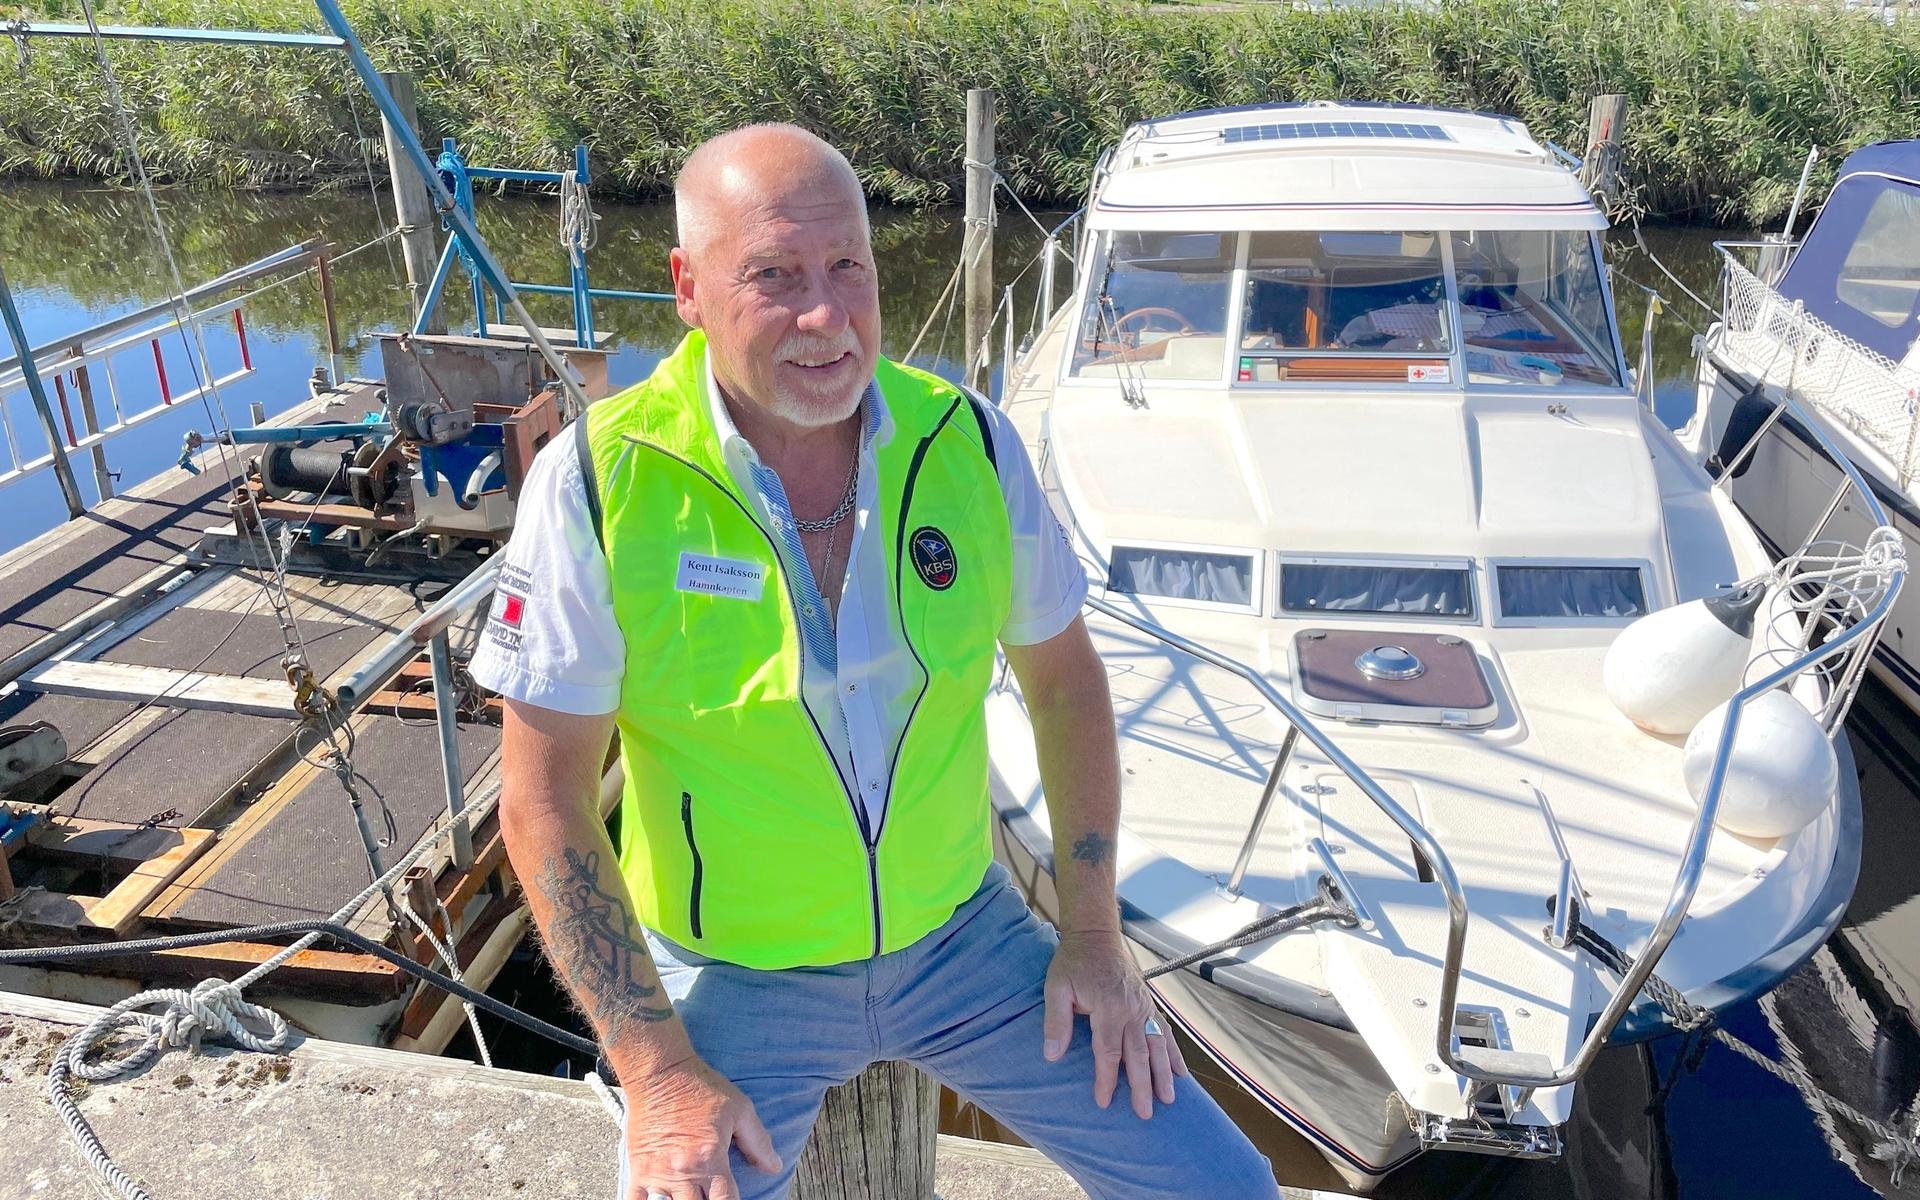 Hamnkapten Kent Isaksson var självklart på plats när Kungsbacka båtsällskap firade 100 år. Han hoppas klubben får hjälp av kommunen för att kunna fortsätta.